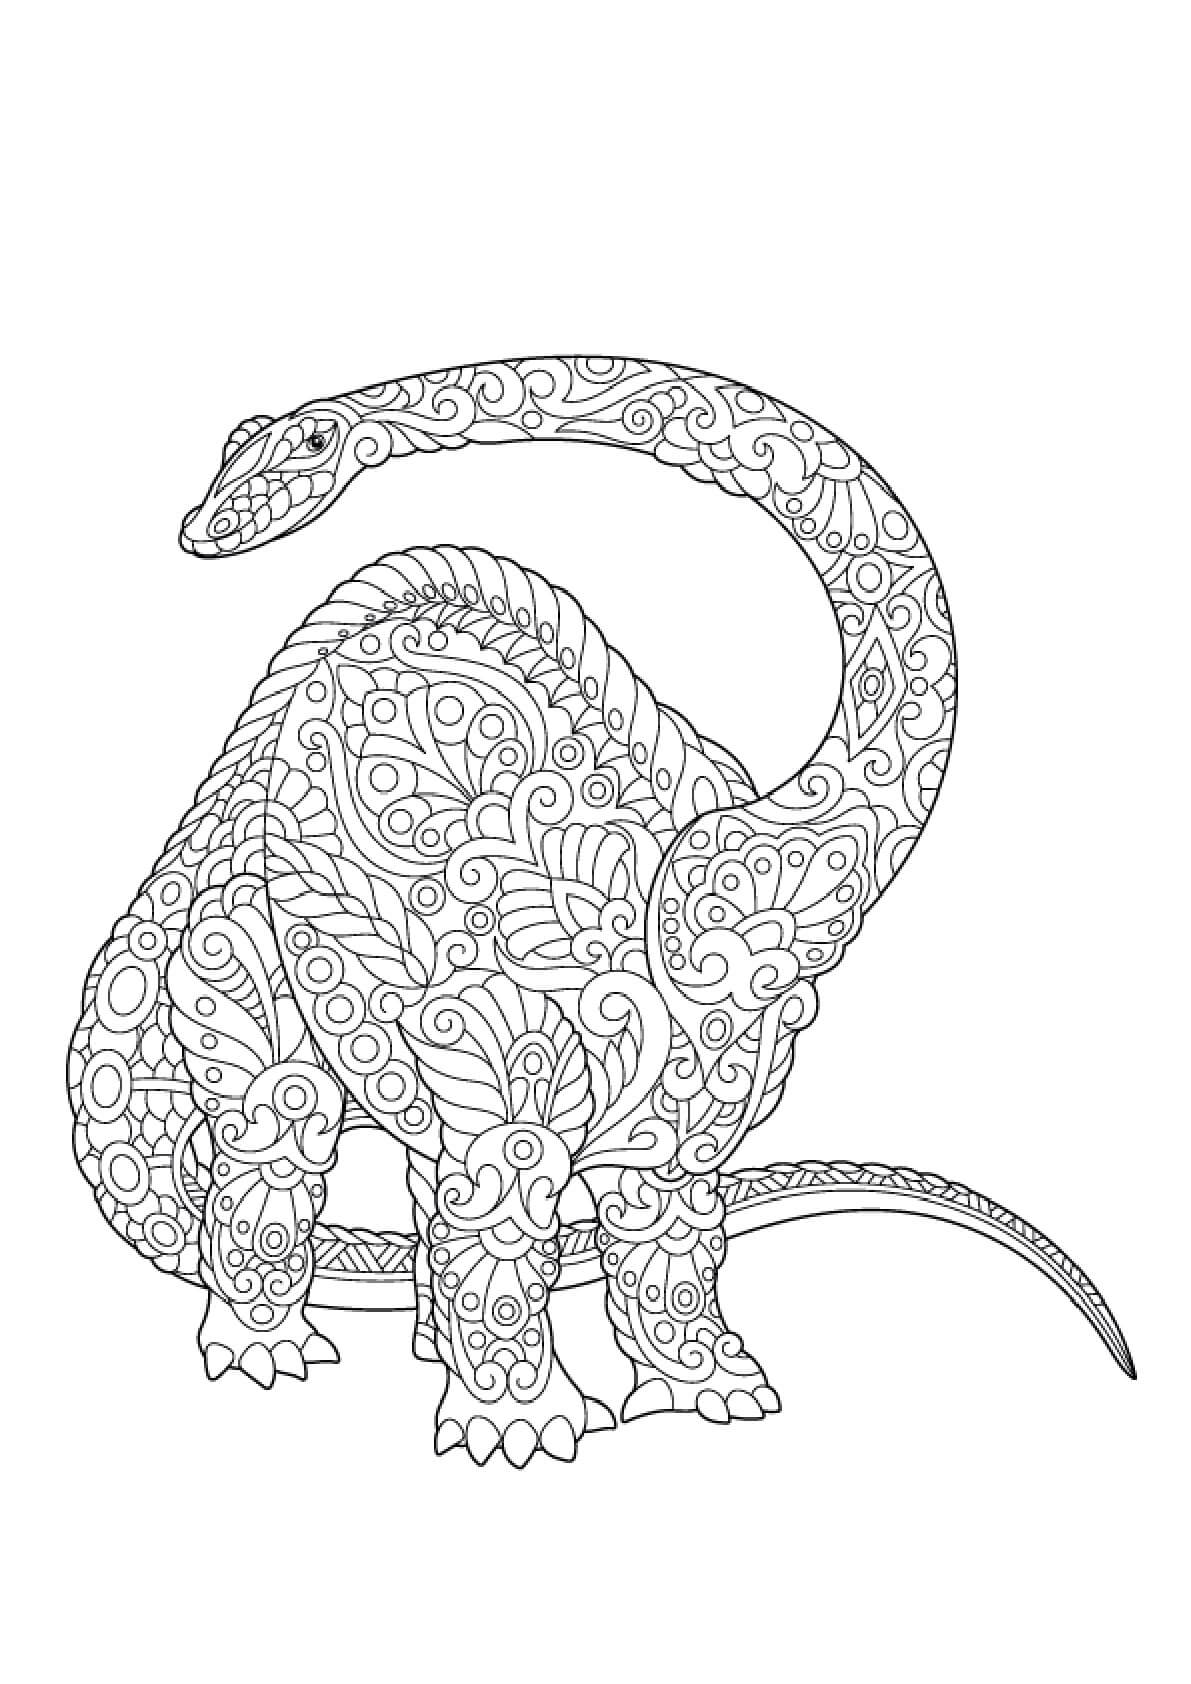 Mandala Brachiosaurus Coloring Page - Sheet 1 Mandalas